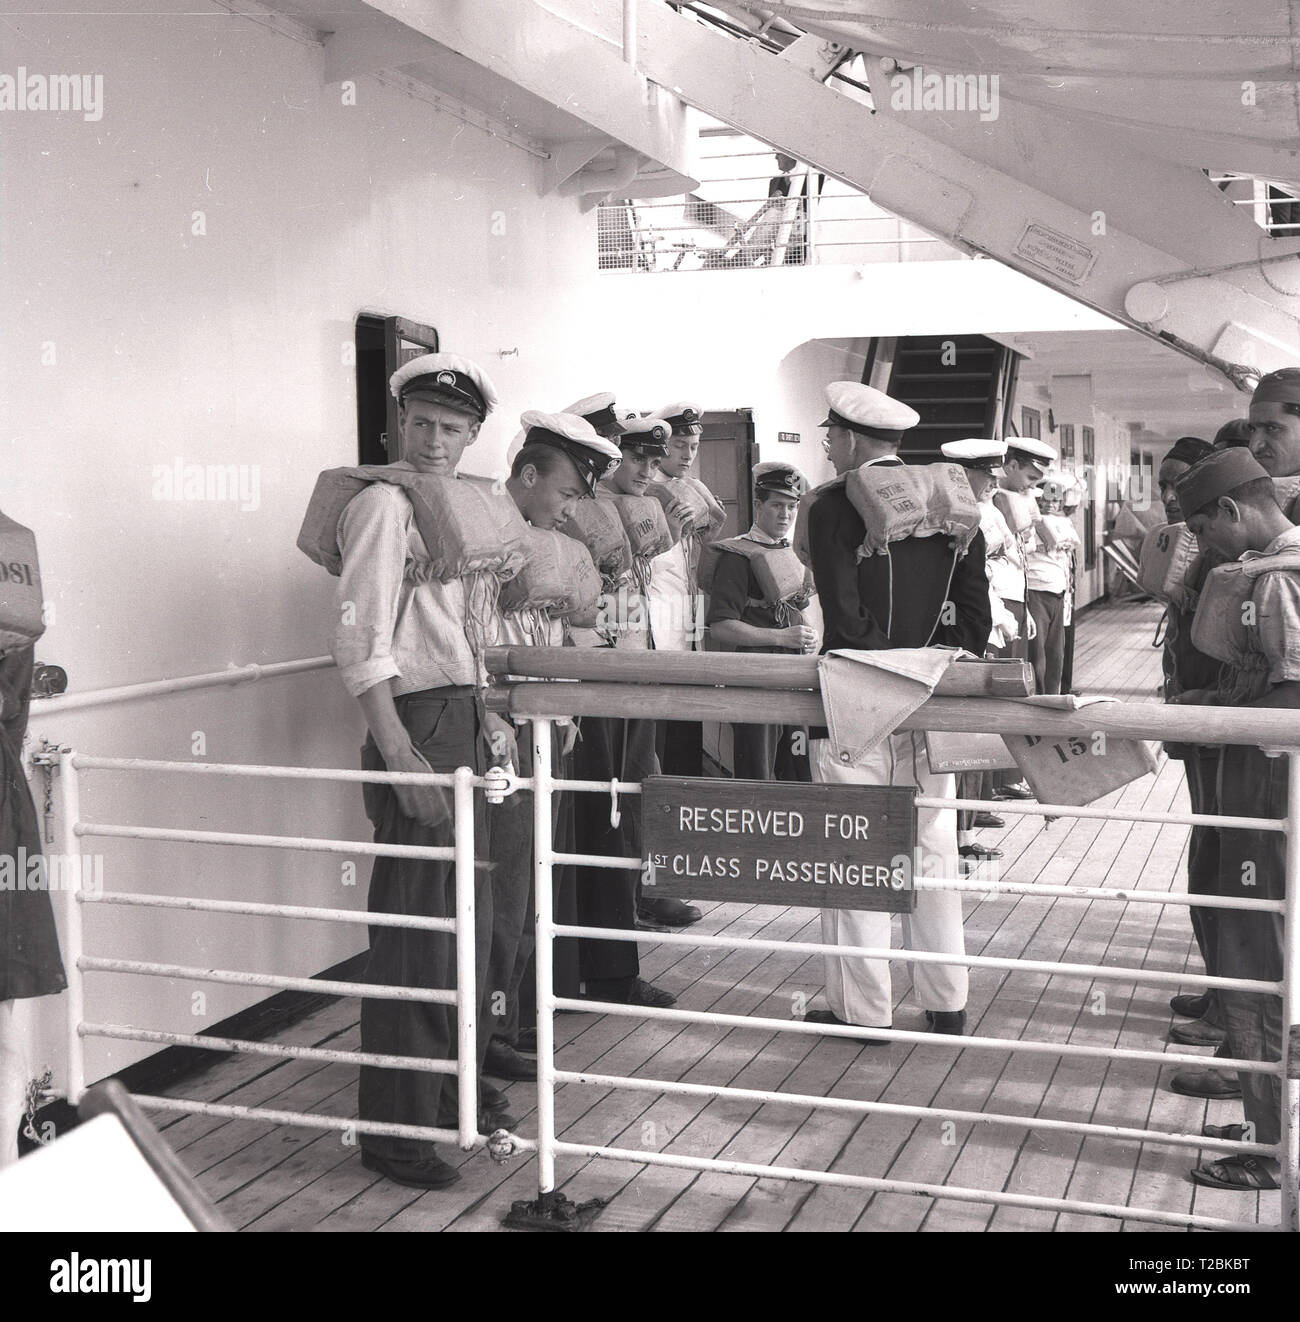 Années 1950, historique, l'équipage d'un navire sur le pont du navire à vapeur P & O SS Chusan se préparant à un exercice de sécurité ou à un exercice d'entraînement avec leur gilet de sauvetage, dans la zone réservée aux passagers de première classe. Un paquebot construit pour les lignes P & O Orient voyageant en Inde et en extrême-Orient, elle a été nommée d'après Chusan, une petite île au large de la Chine. Banque D'Images